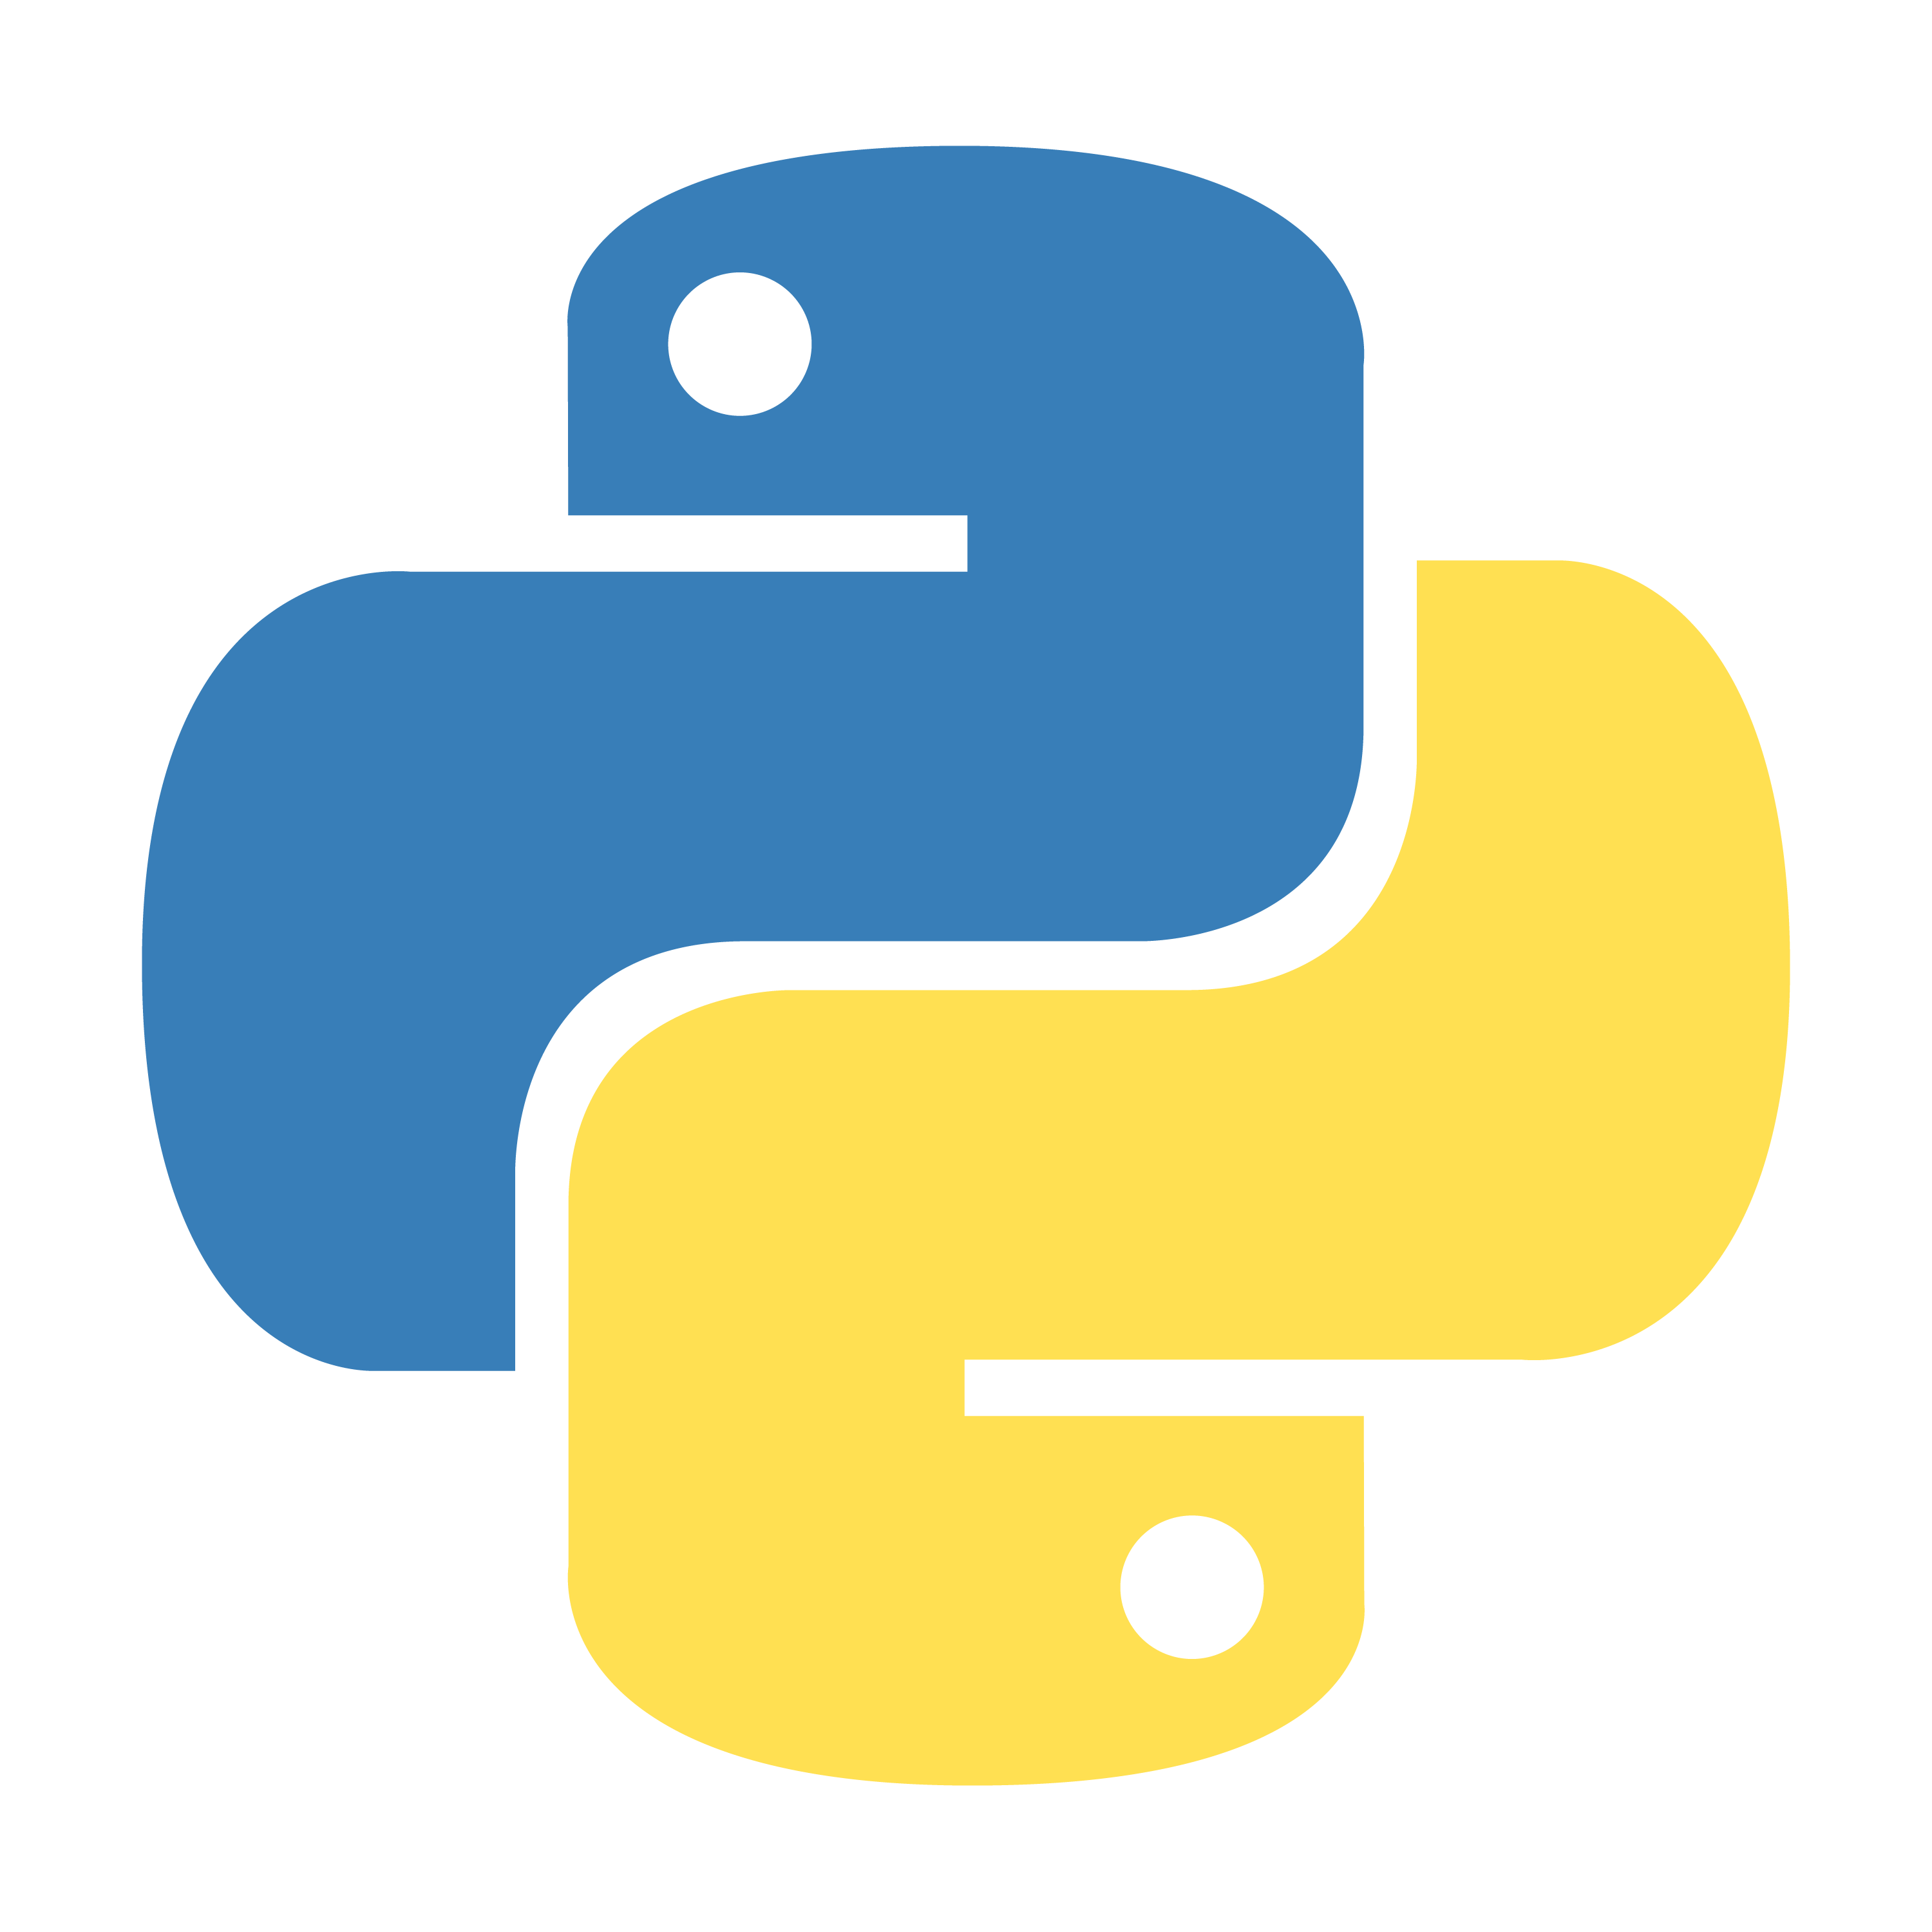 Логотип языка питон. Питон язык программирования лого. Python logo без фона. Python 3. Значок питона.